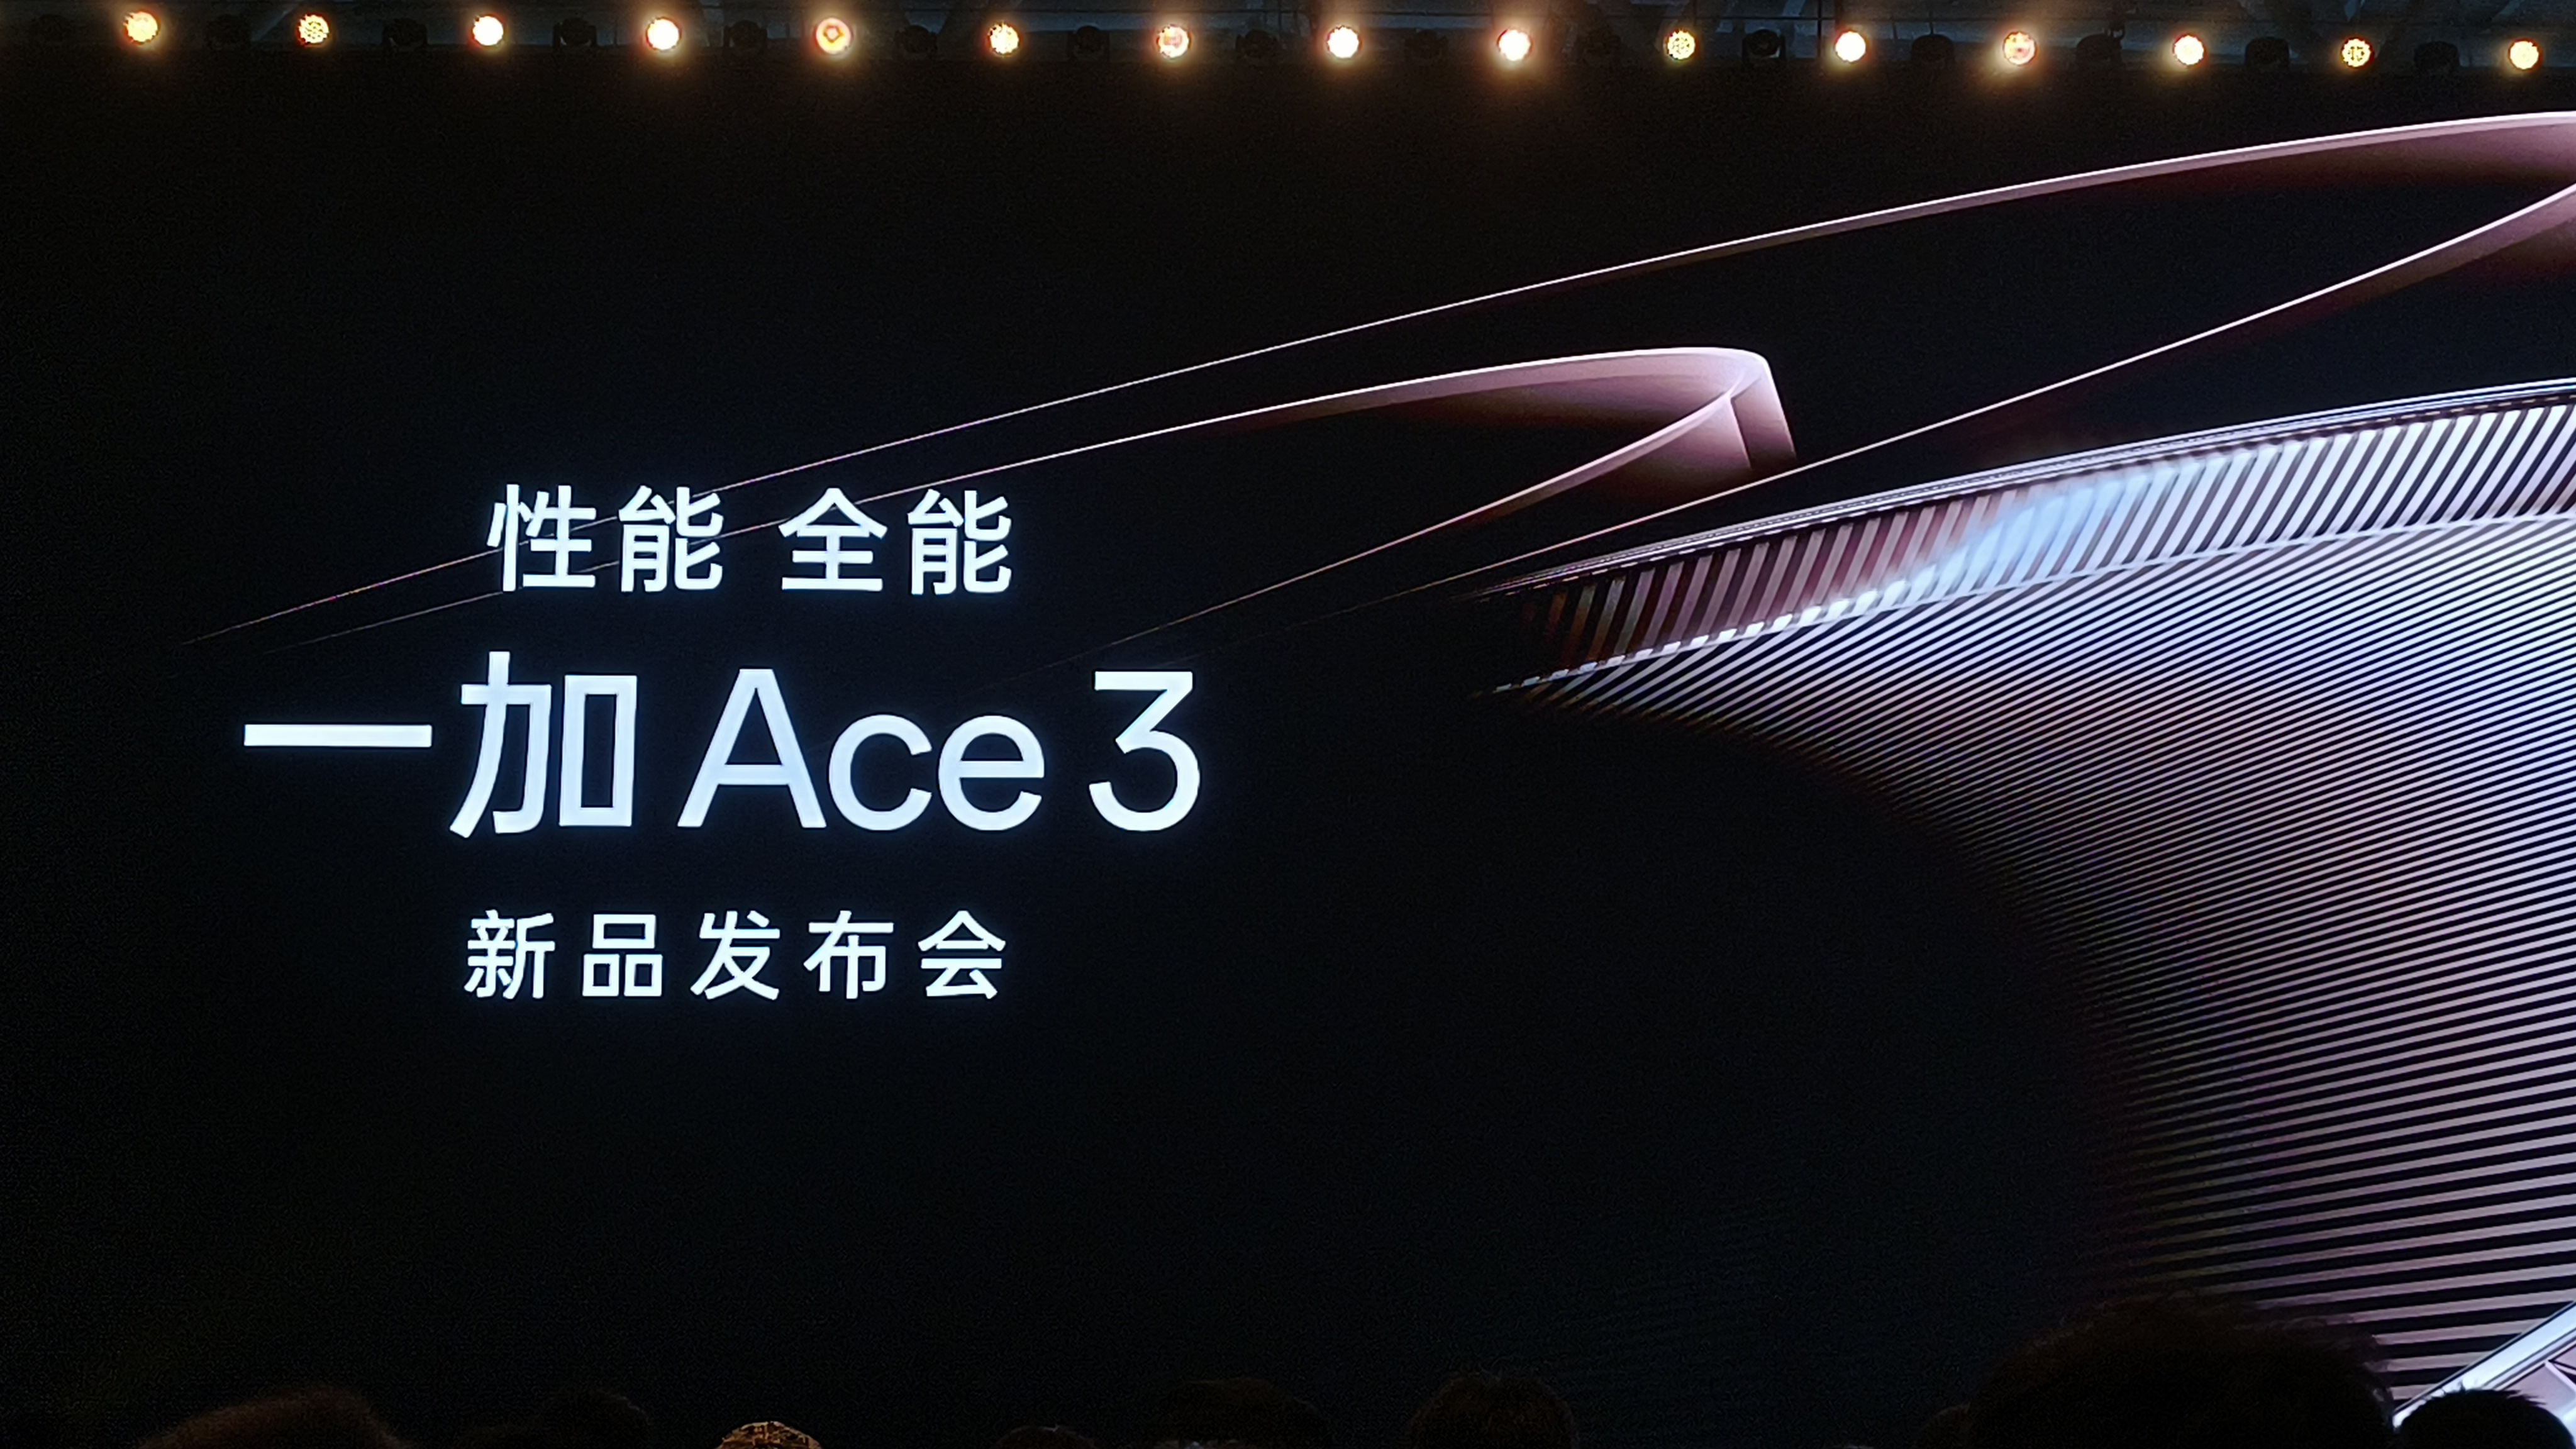 一加 Ace 3今天发布！支持游戏120超帧 /1.5K超分同开